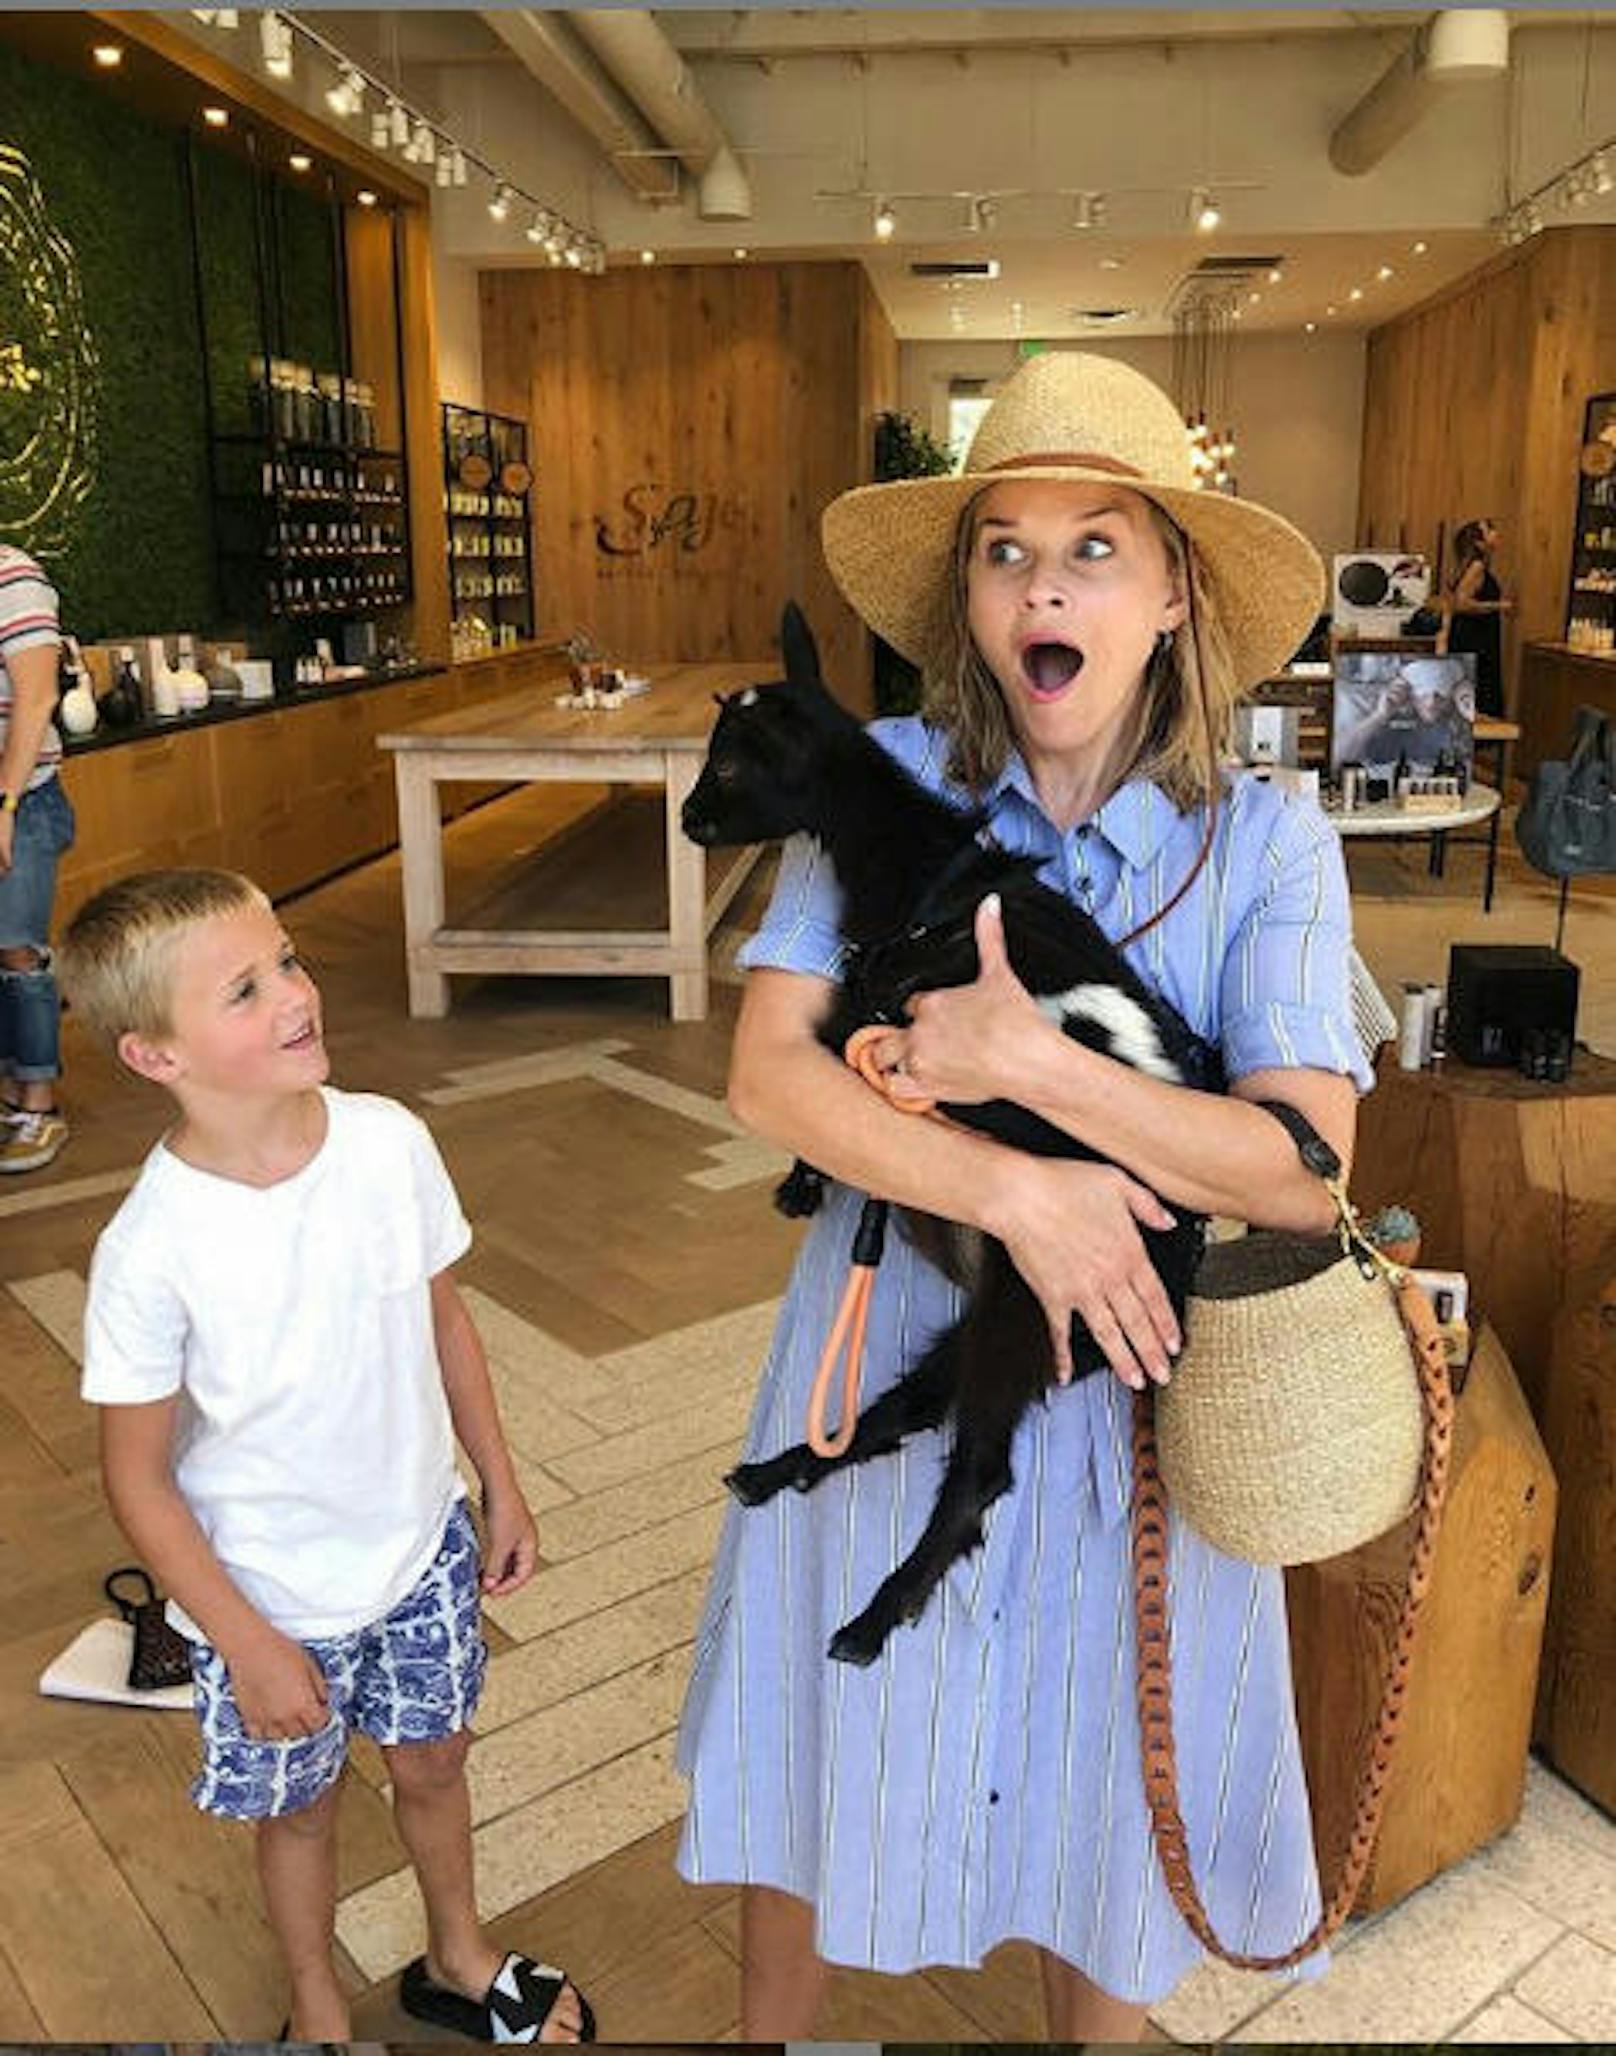 09.09.2019: "Habe heute eine Baby-Ziege getroffen. Ich bin überhaupt nicht aufgeregt.", schrieb US-Schauspielerin Reese Witherspoon zu diesem witzigen Schnappschuss.